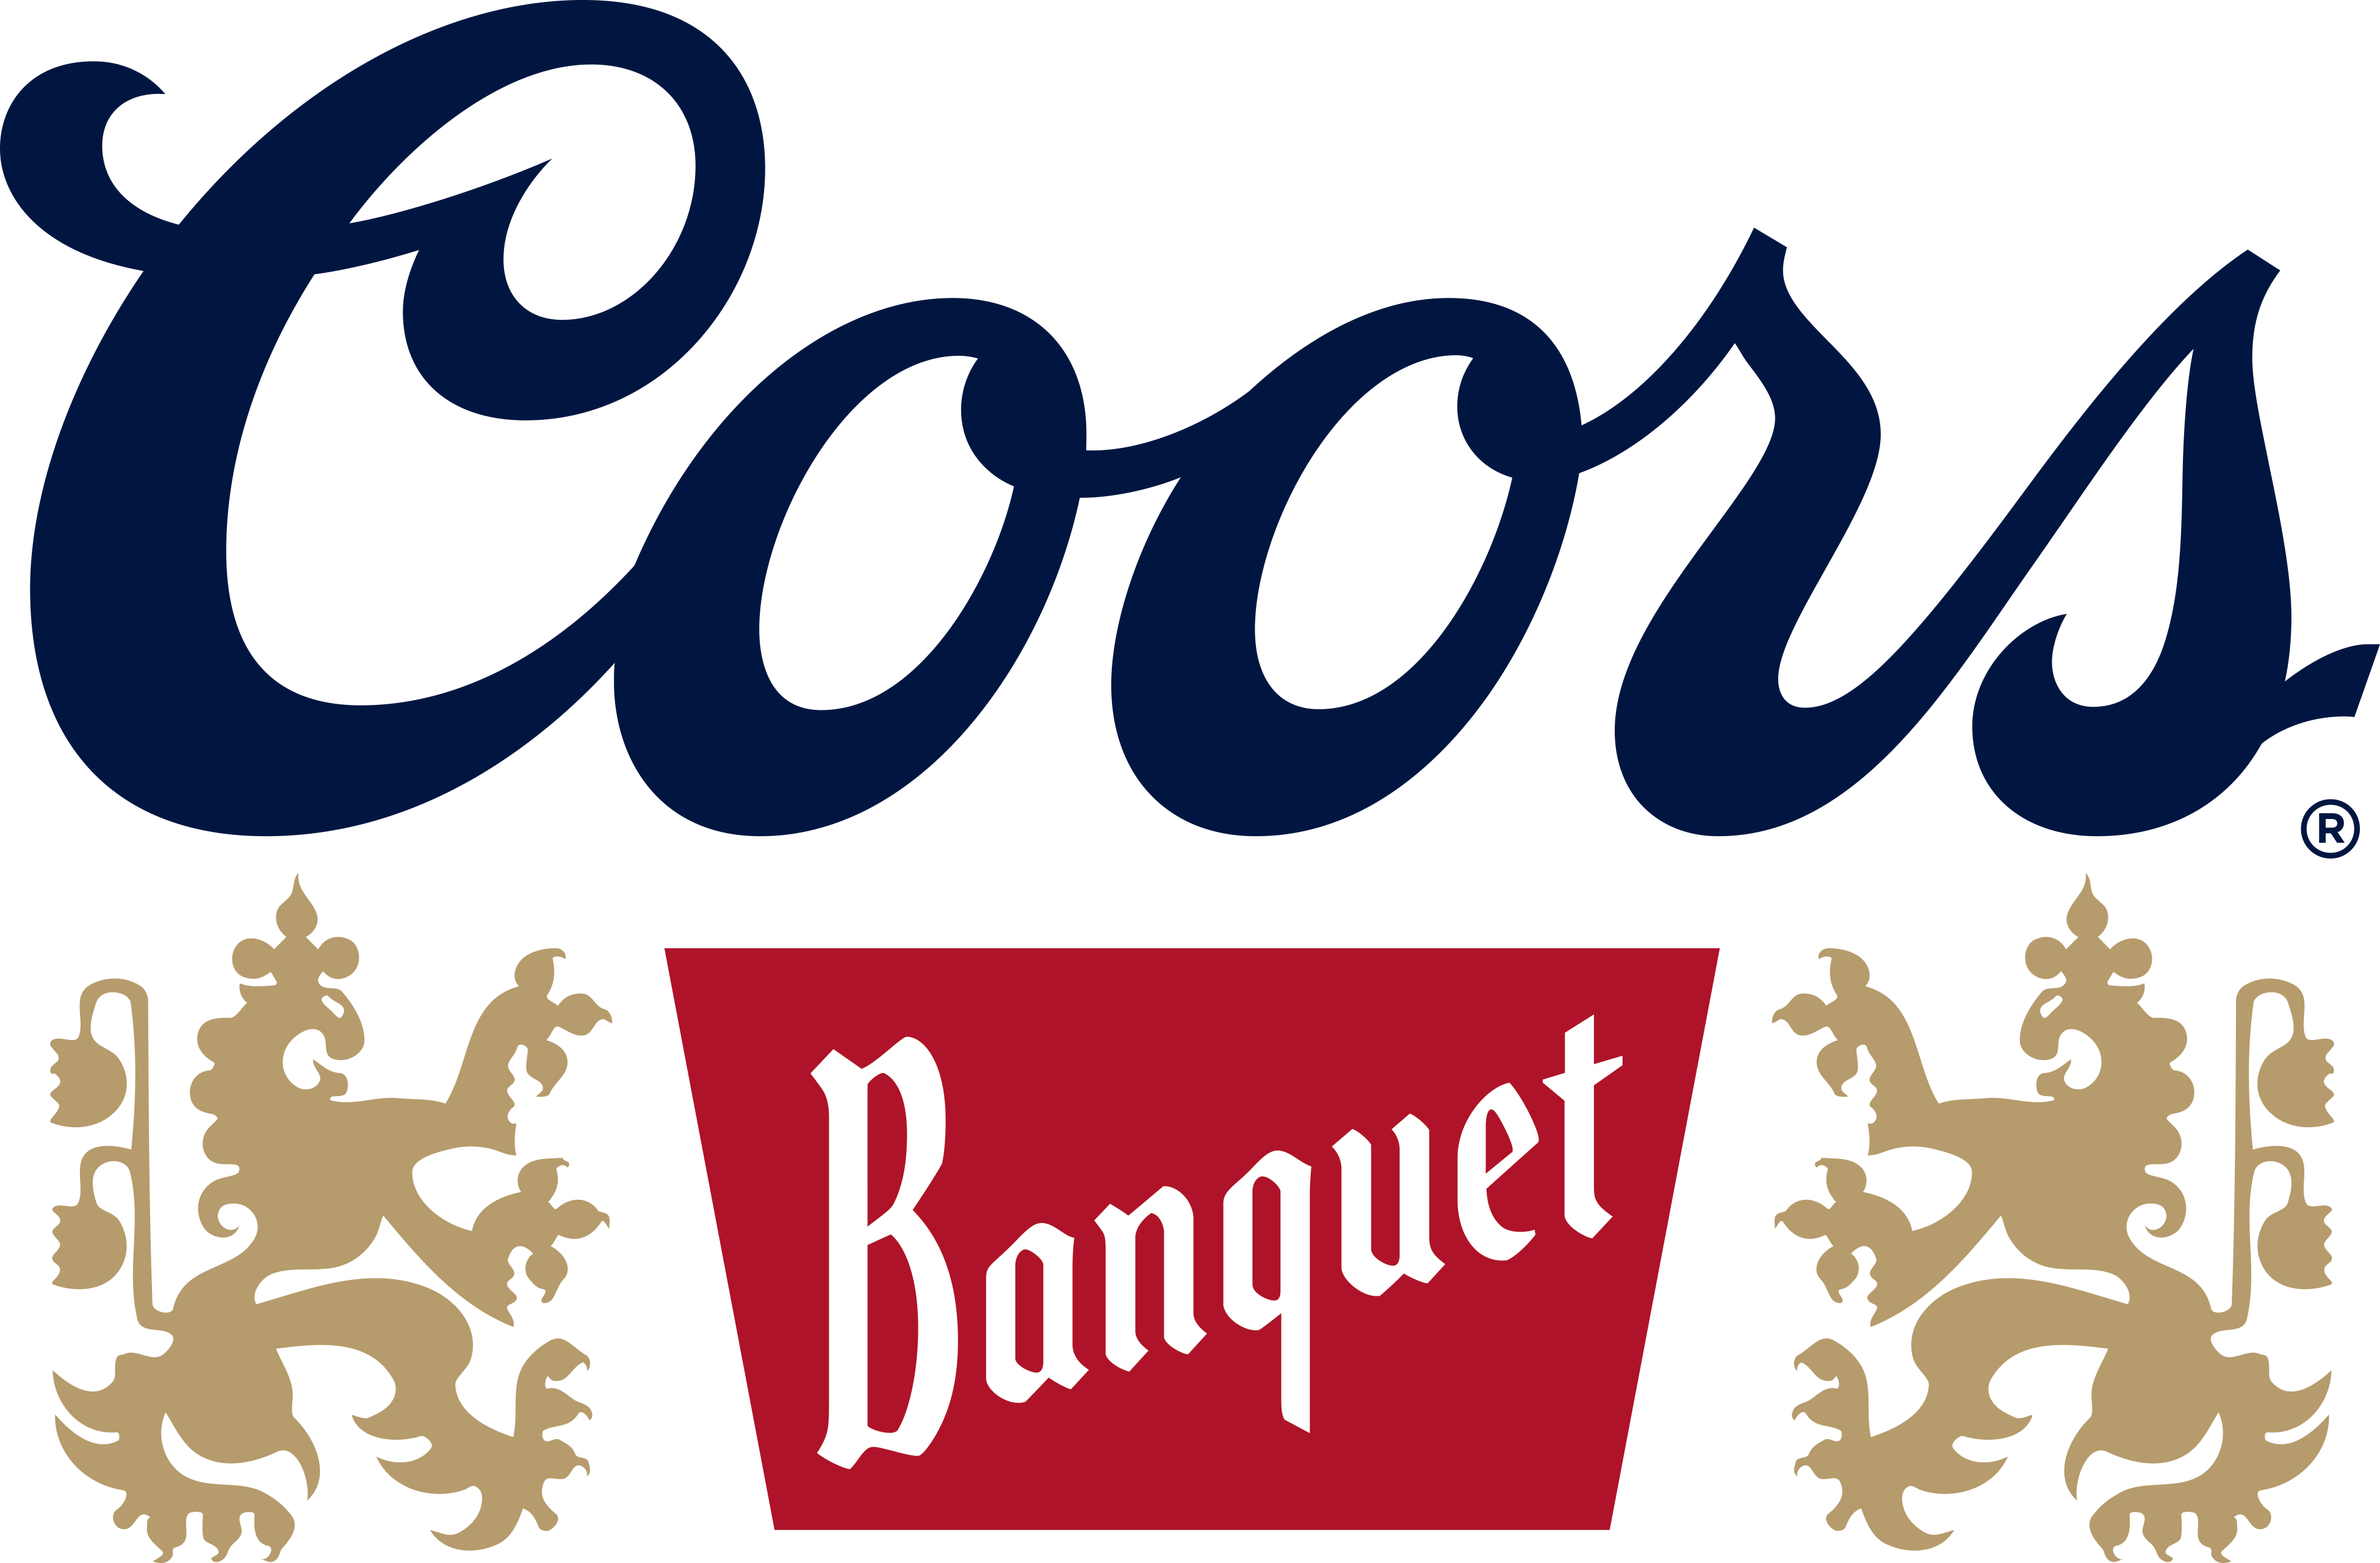 Coors Banquet logo